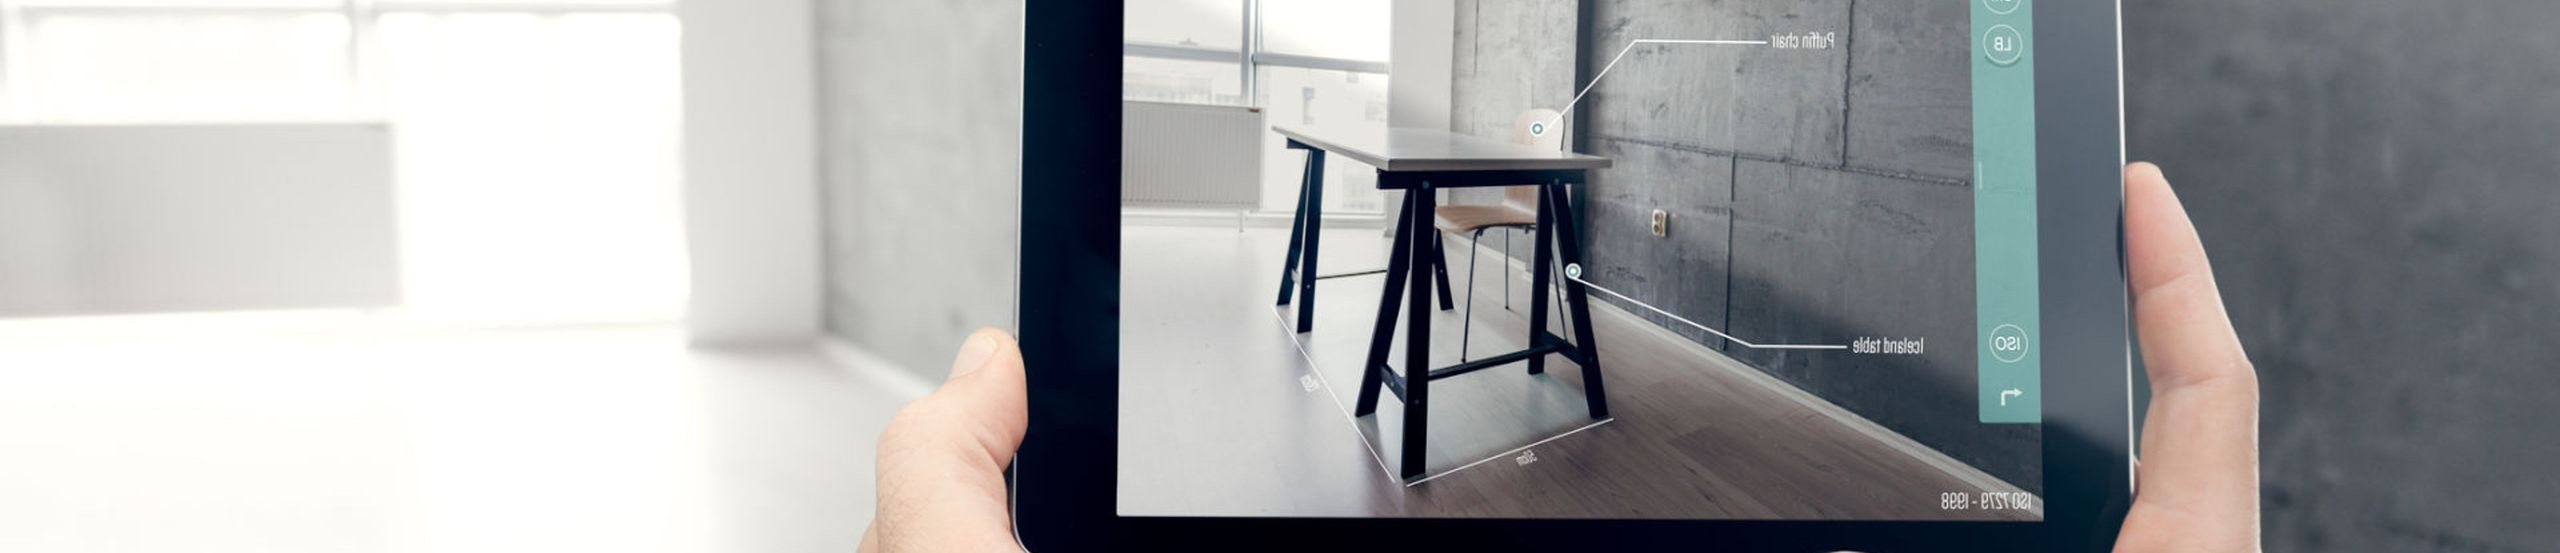 POV: Zwei Hände halten ein Tablet, die App auf dem Display zeigt Möbel im Raum, der in der Realität leer ist